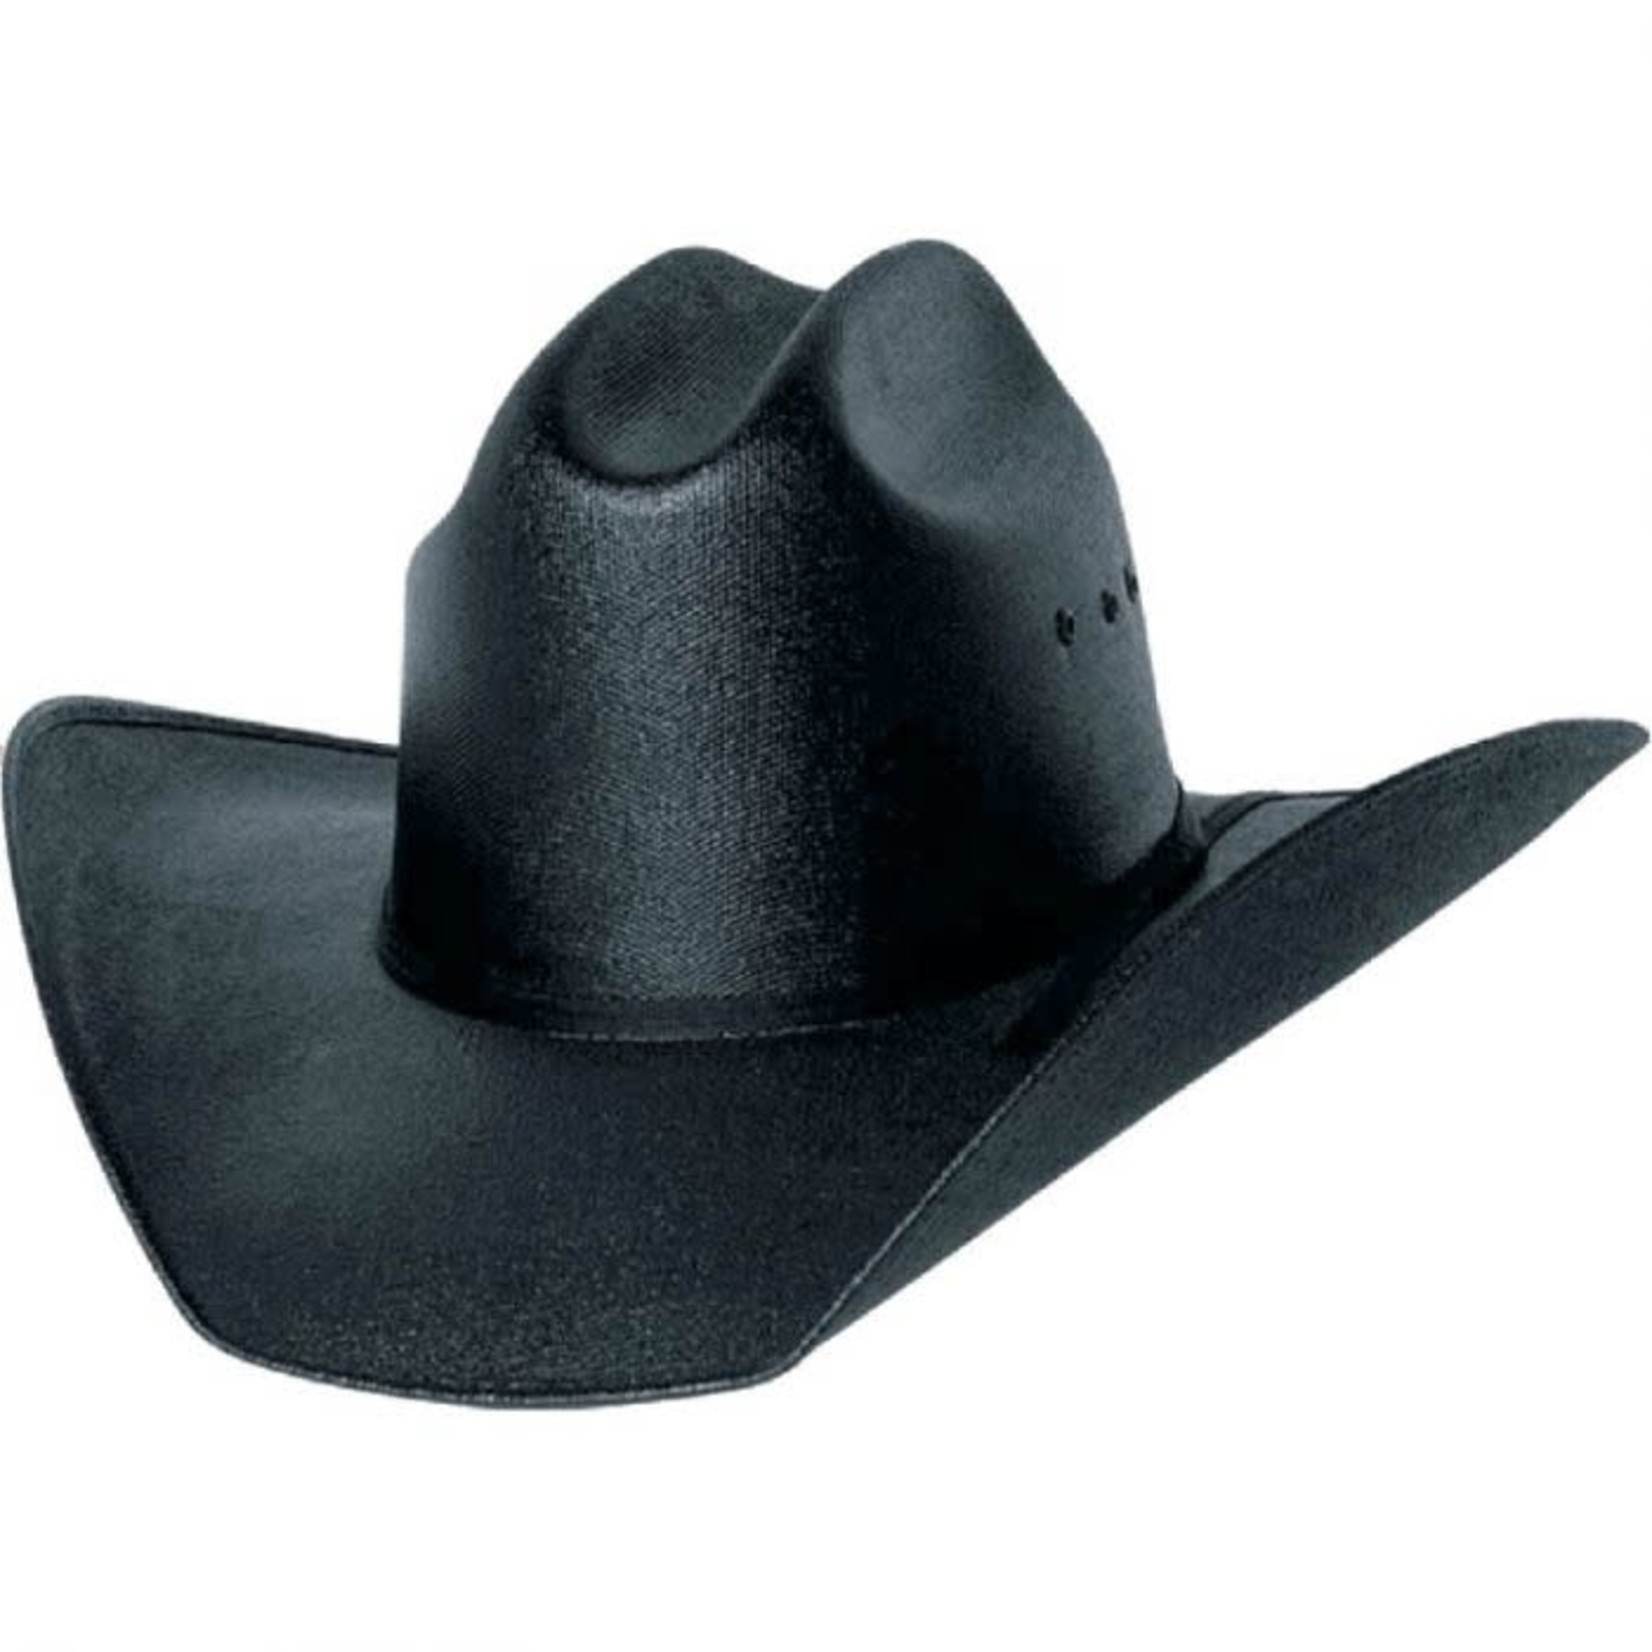 Hildago Texas Canvas Cowboy Hat